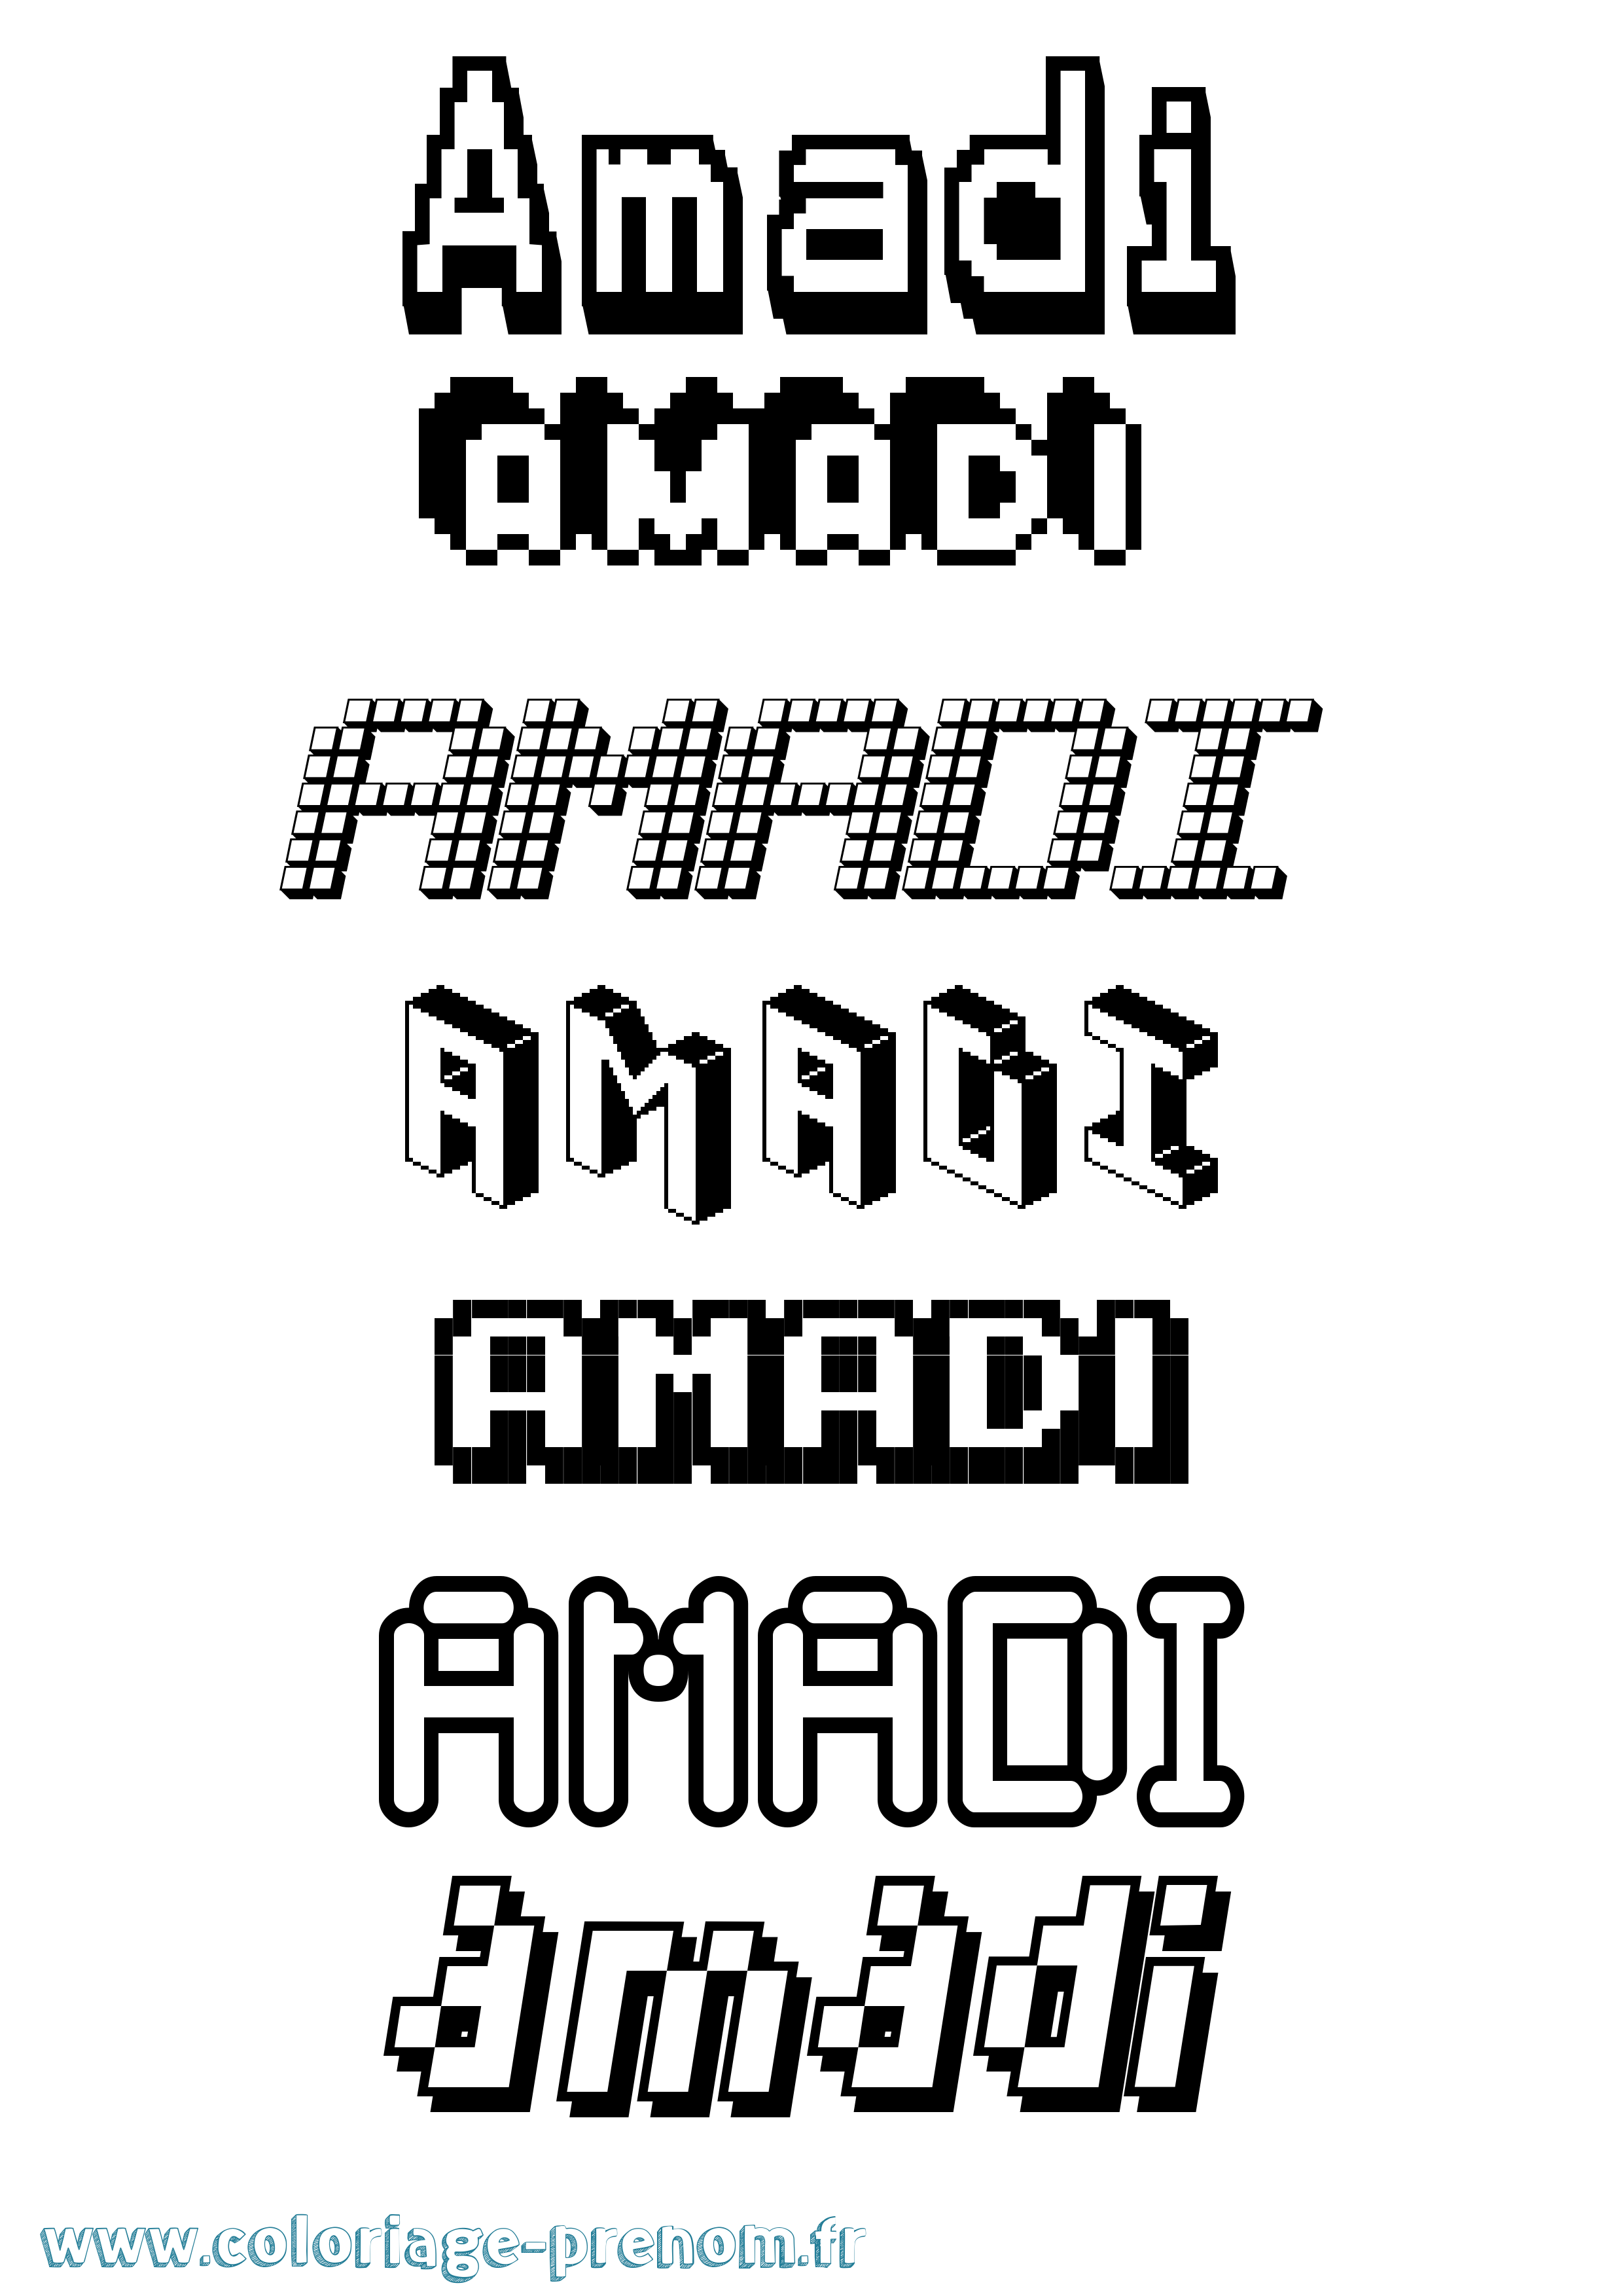 Coloriage prénom Amadi Pixel